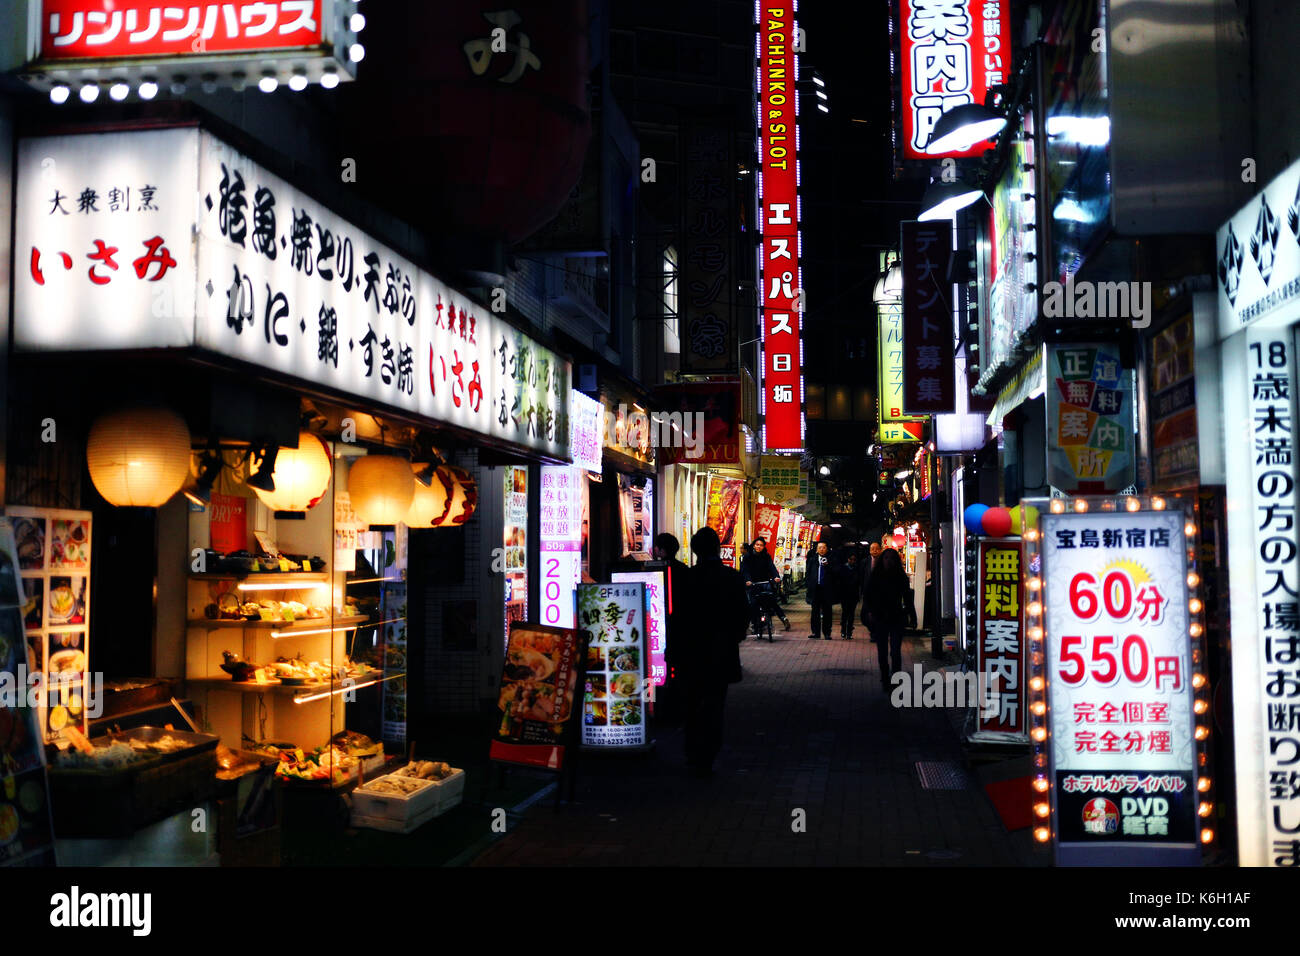 SHINJUKU, TOKYO, JAPAN - DECEMBER 2016 - View of a small street in Shinjuku at night Stock Photo